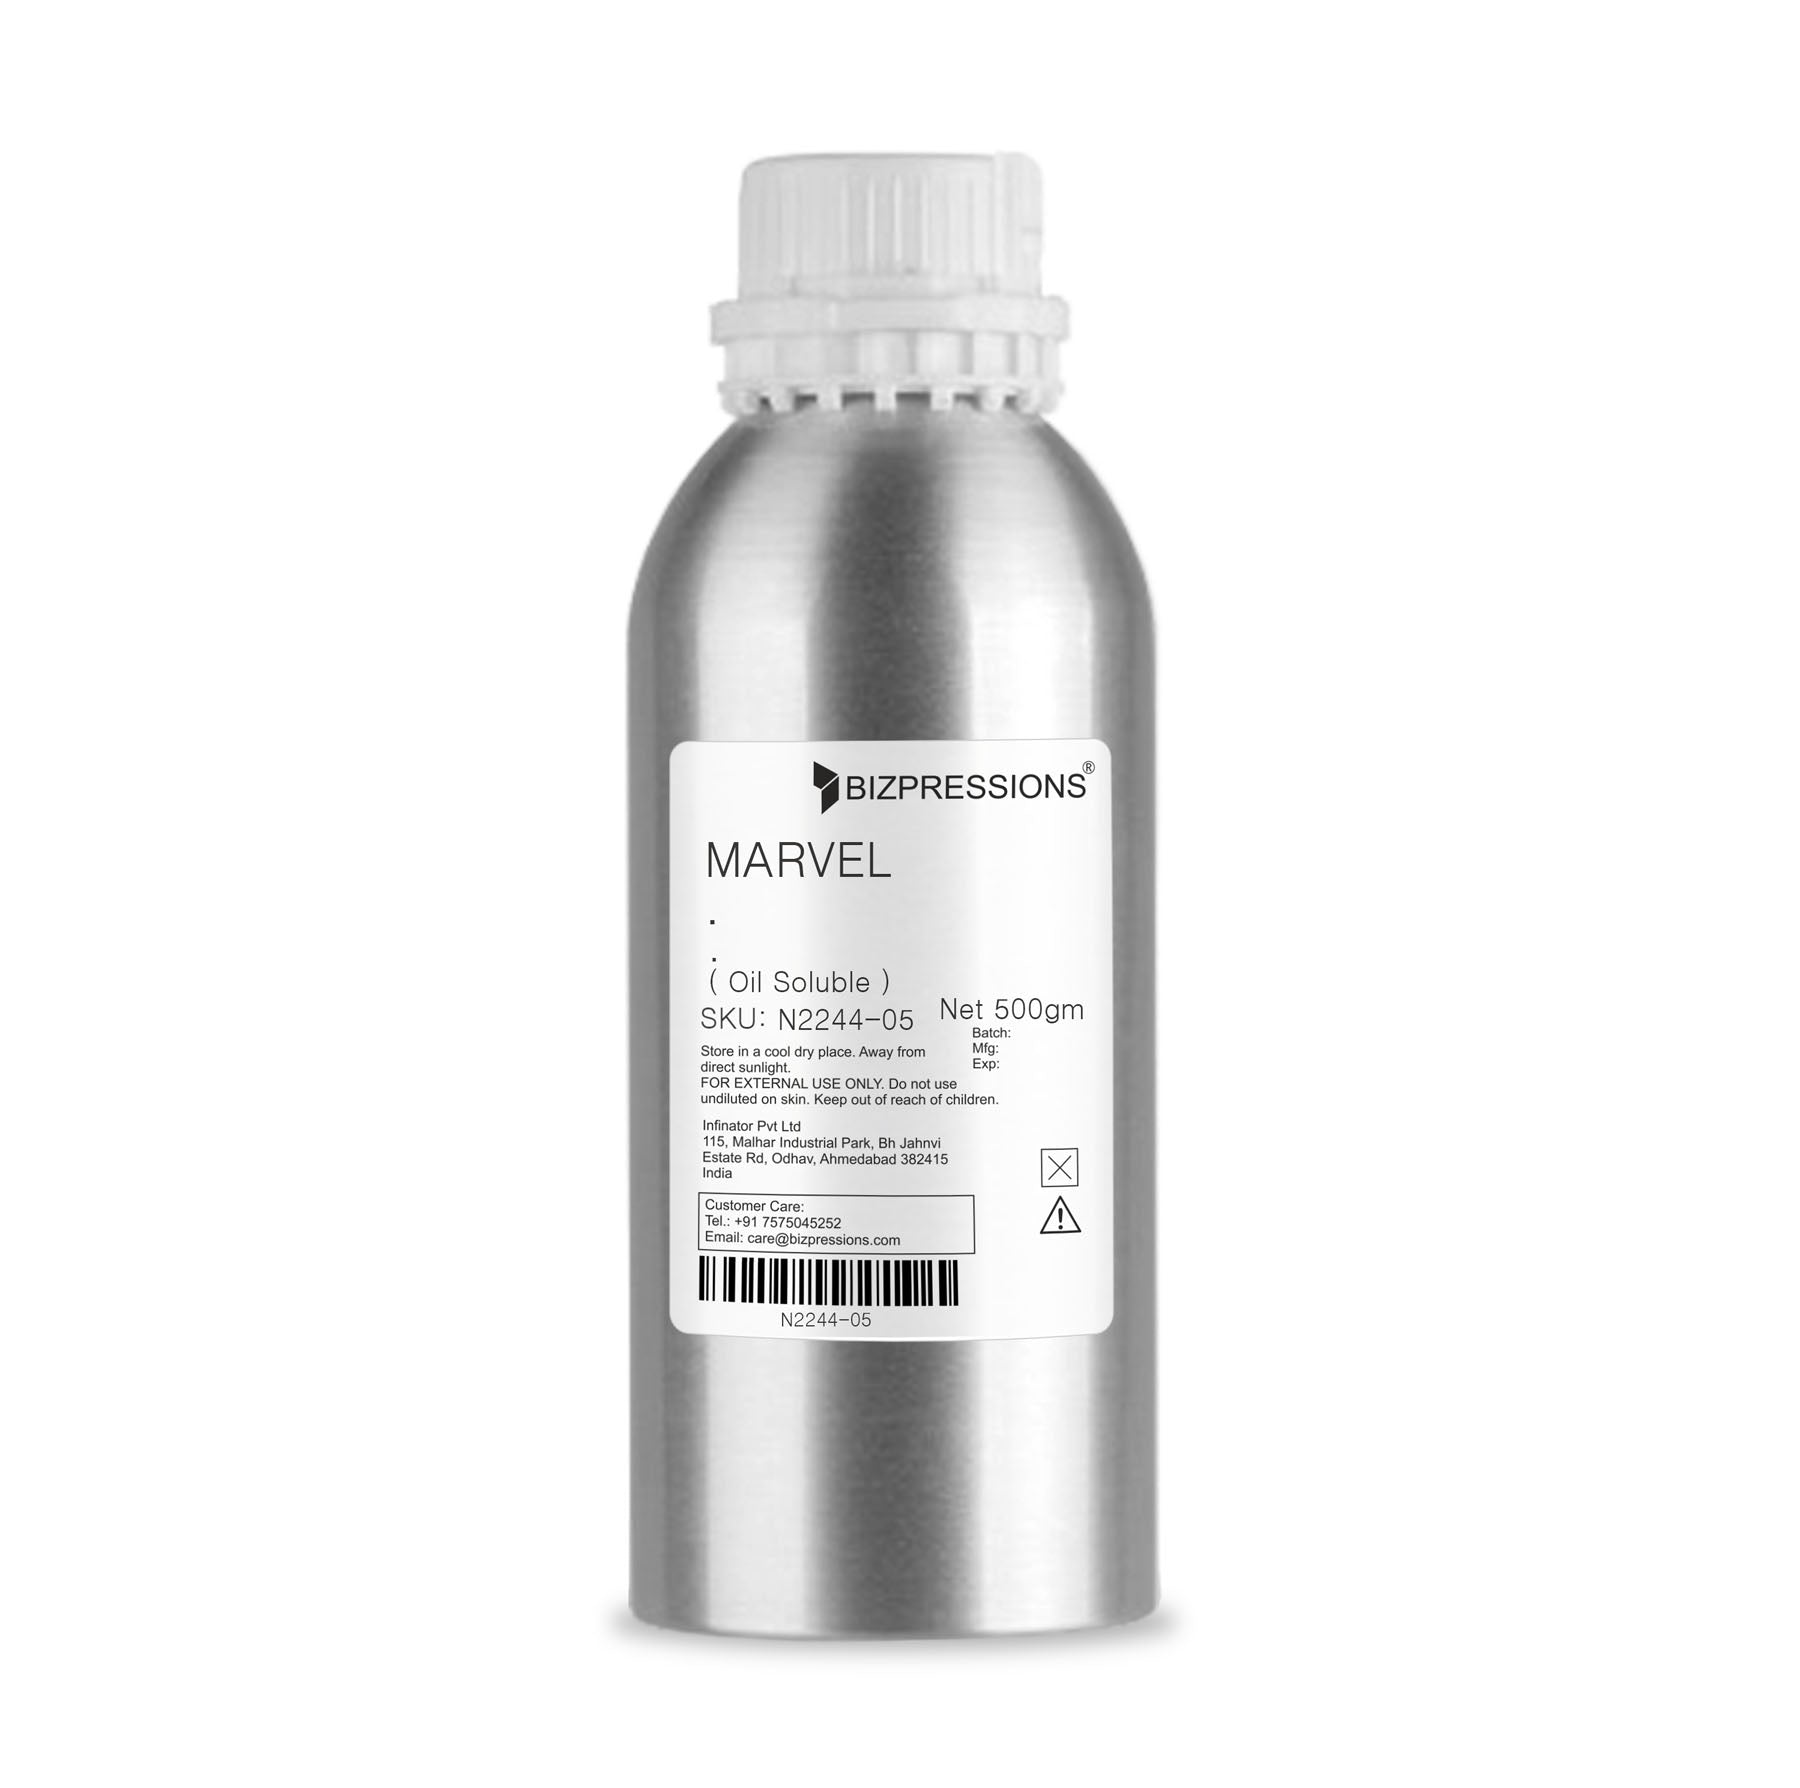 MARVEL - Fragrance ( Oil Soluble ) - 500 gm